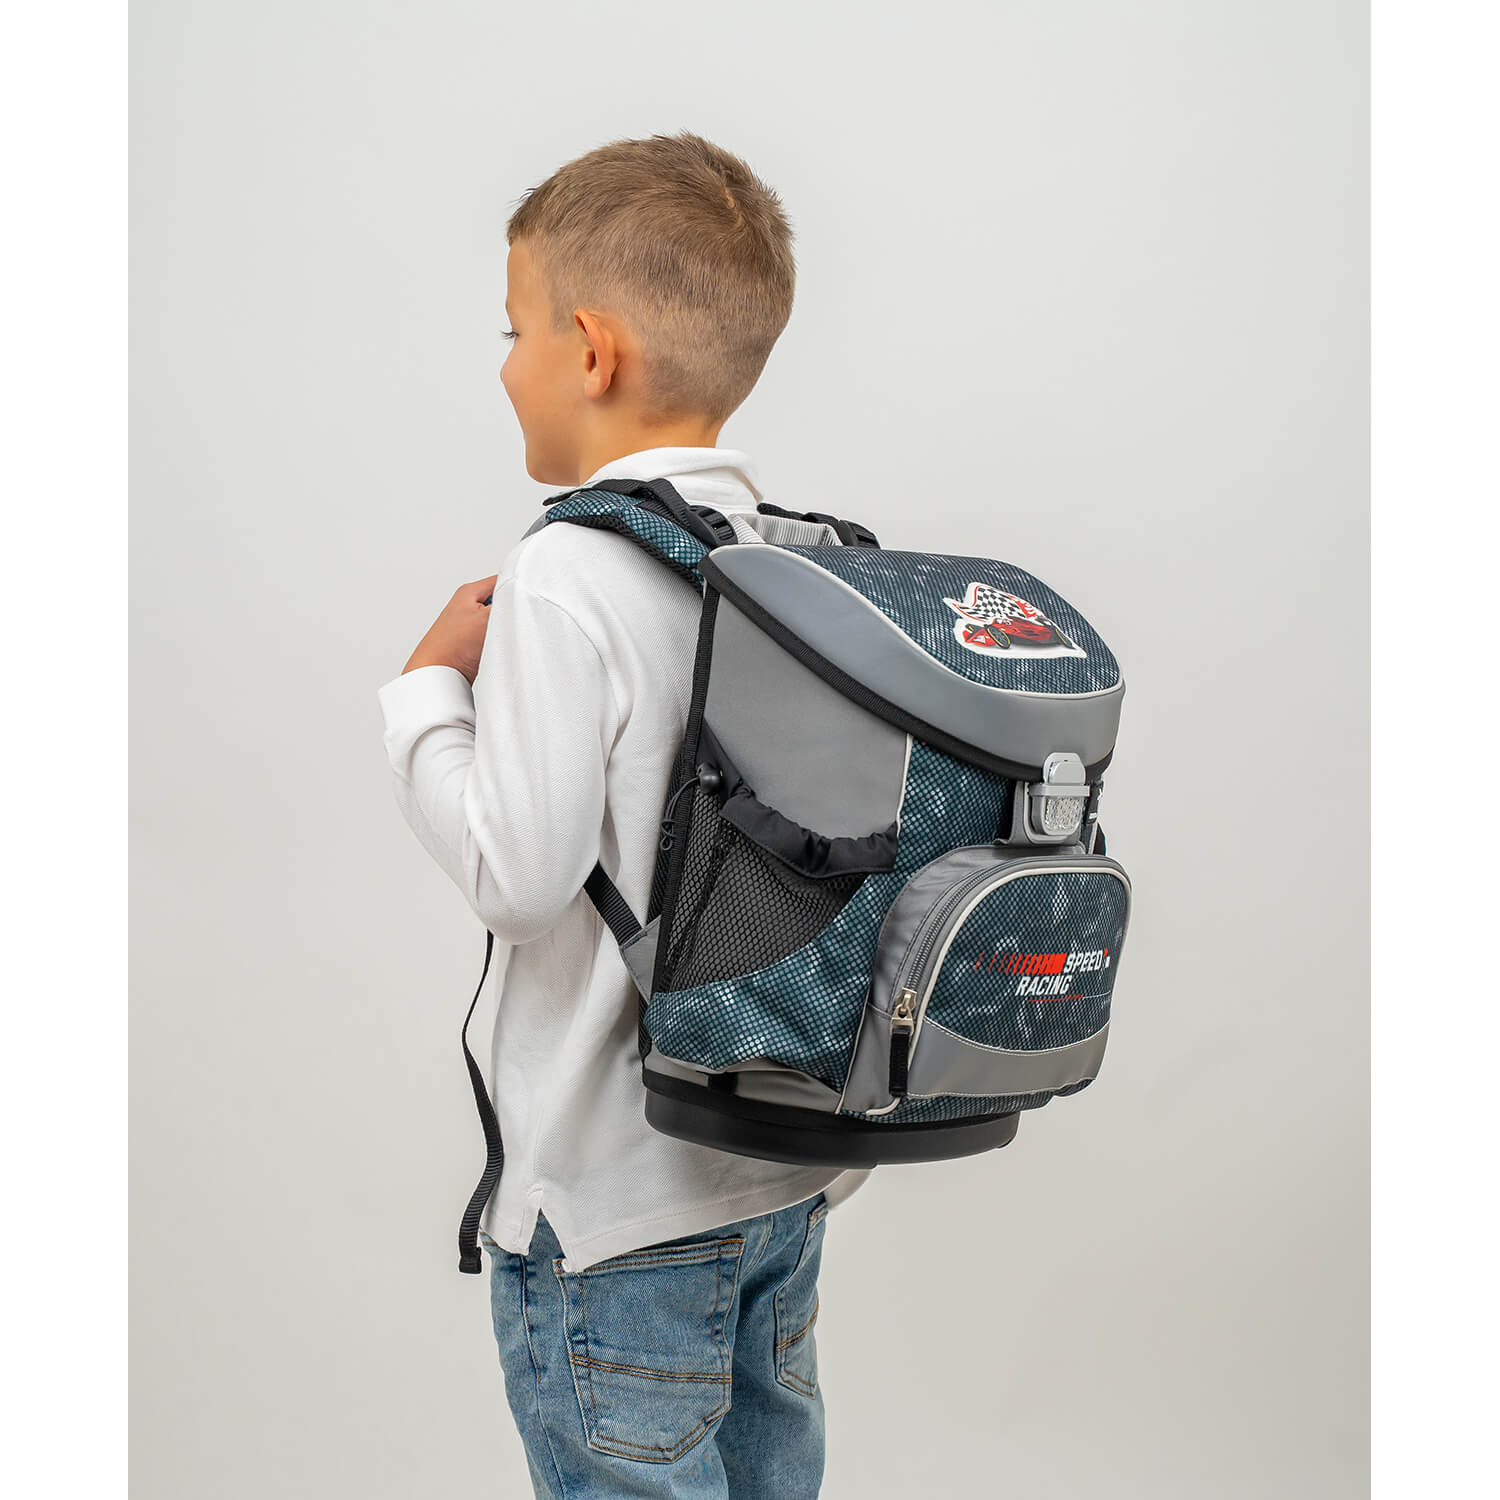 Mini-Fit Red Dots schoolbag set 4 pcs